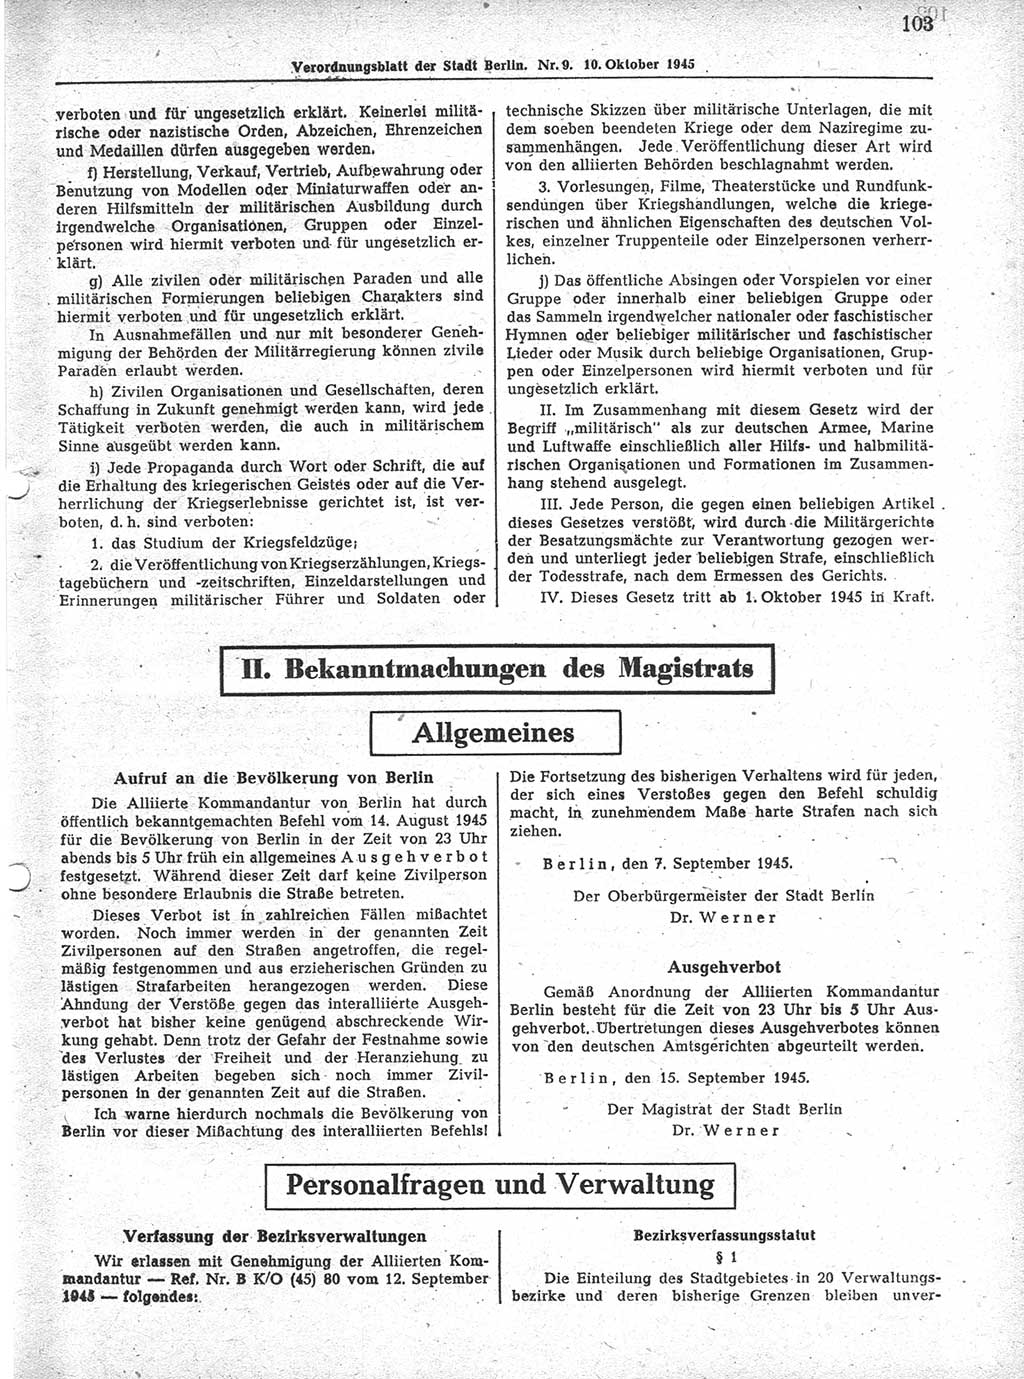 Verordnungsblatt (VOBl.) der Stadt Berlin 1945, Seite 103 (VOBl. Bln. 1945, S. 103)